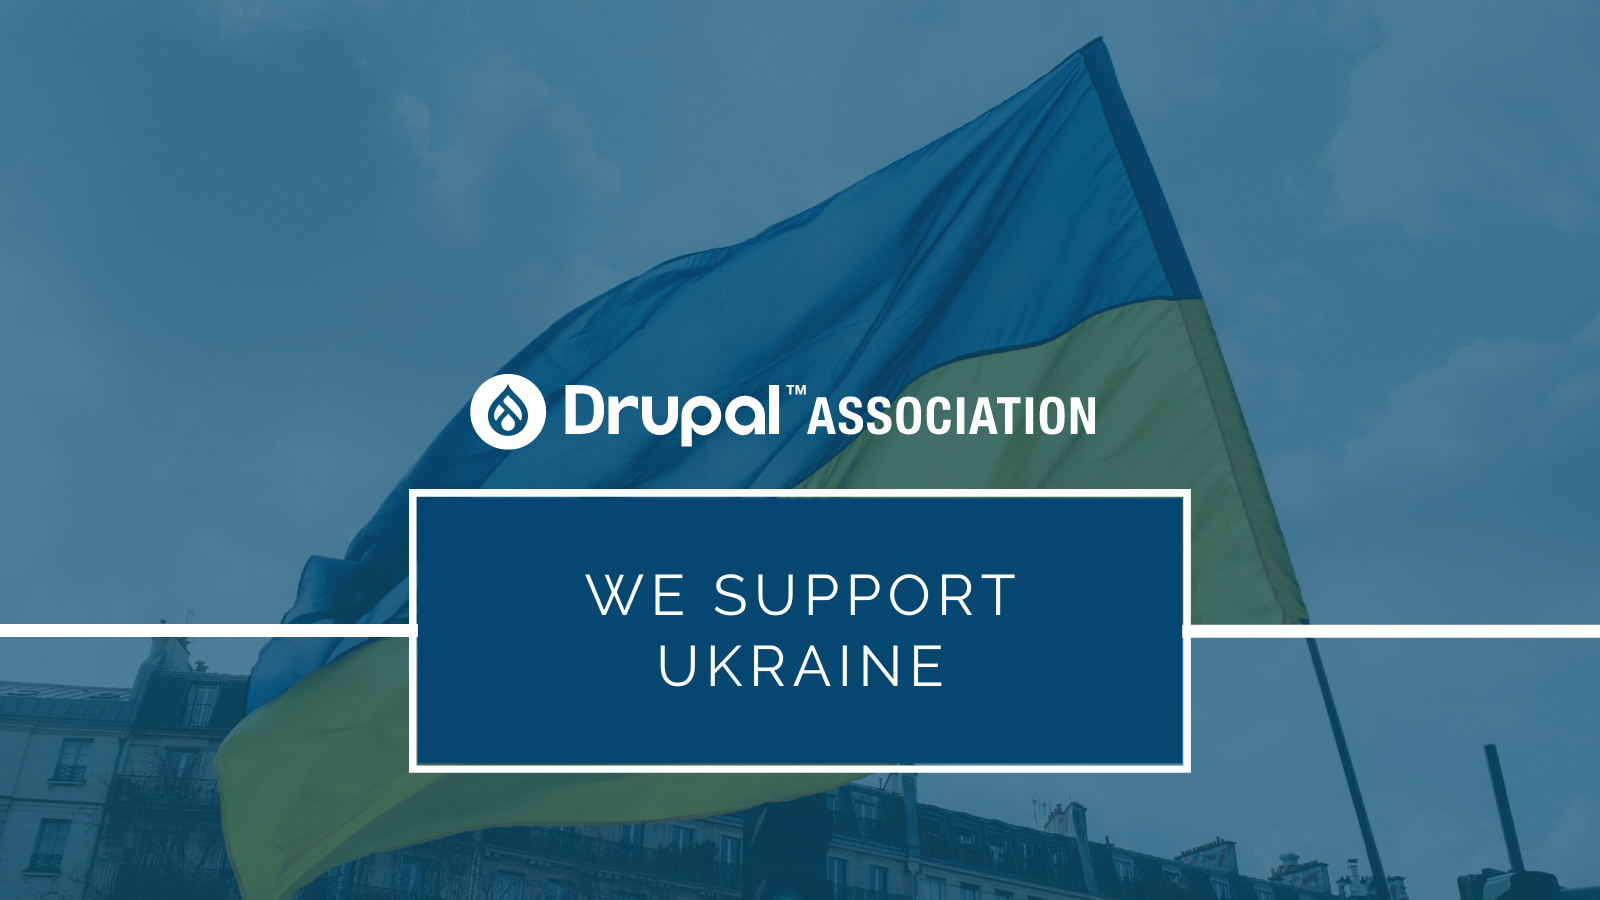 Drupal Association blog: The Drupal Association still stands with Ukraine